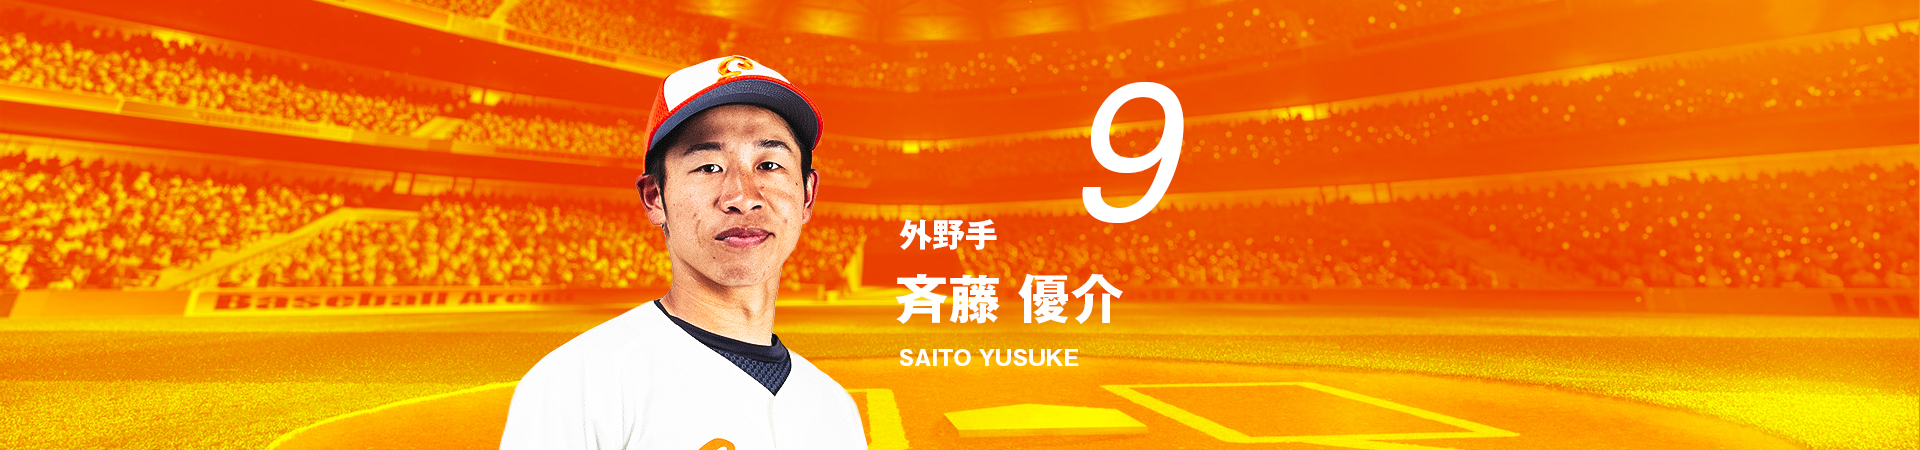 9【外野手】斉藤 優介-SAITO YUSUKE